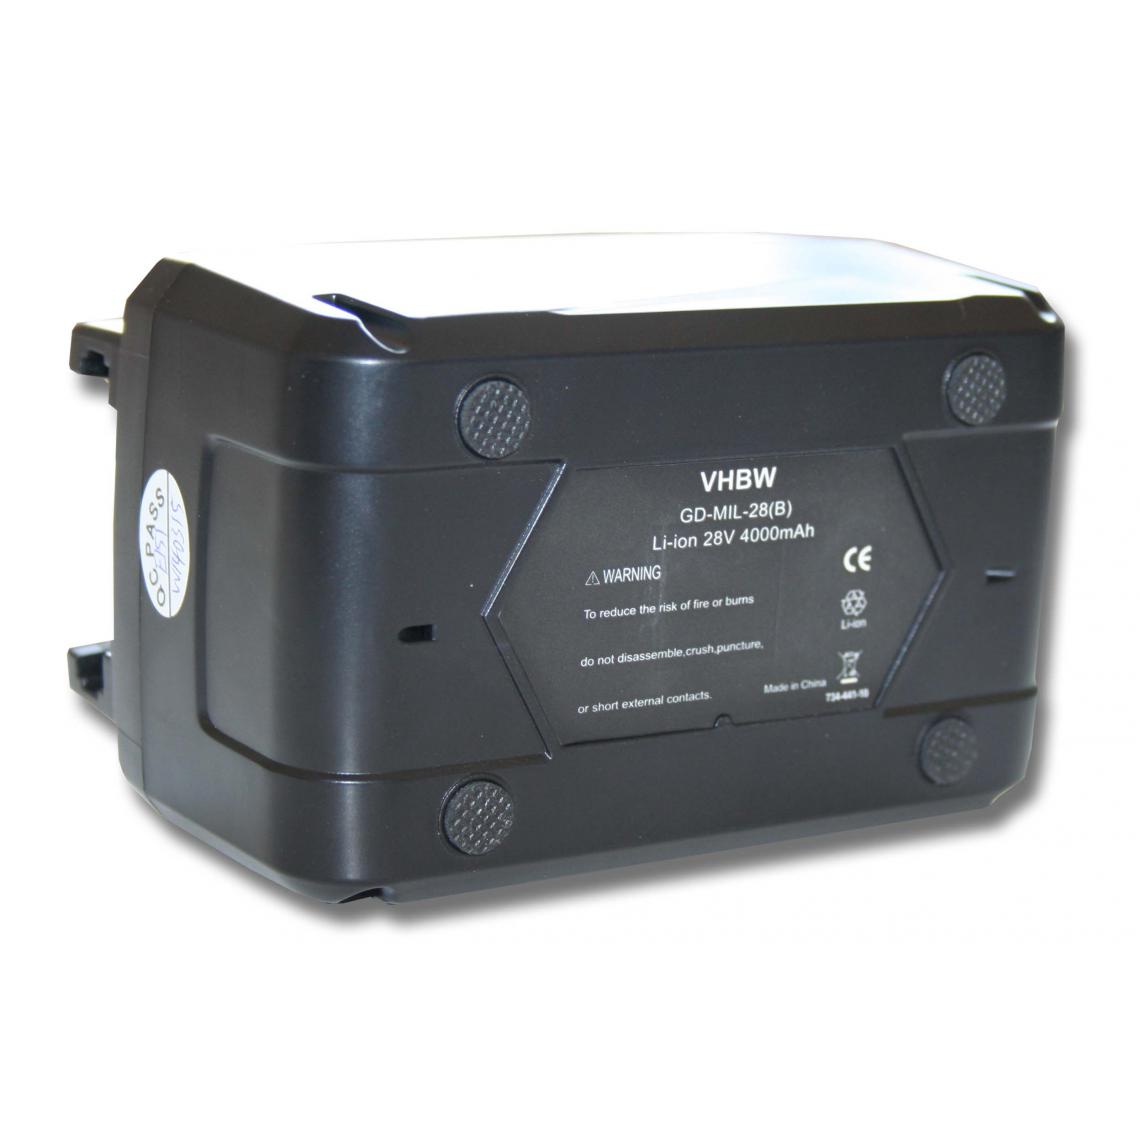 Vhbw - vhbw Batterie compatible avec Milwaukee HD28 CS, HD28 H, HD28 HX outil électrique (4000mAh Li-ion 28V) - Clouterie